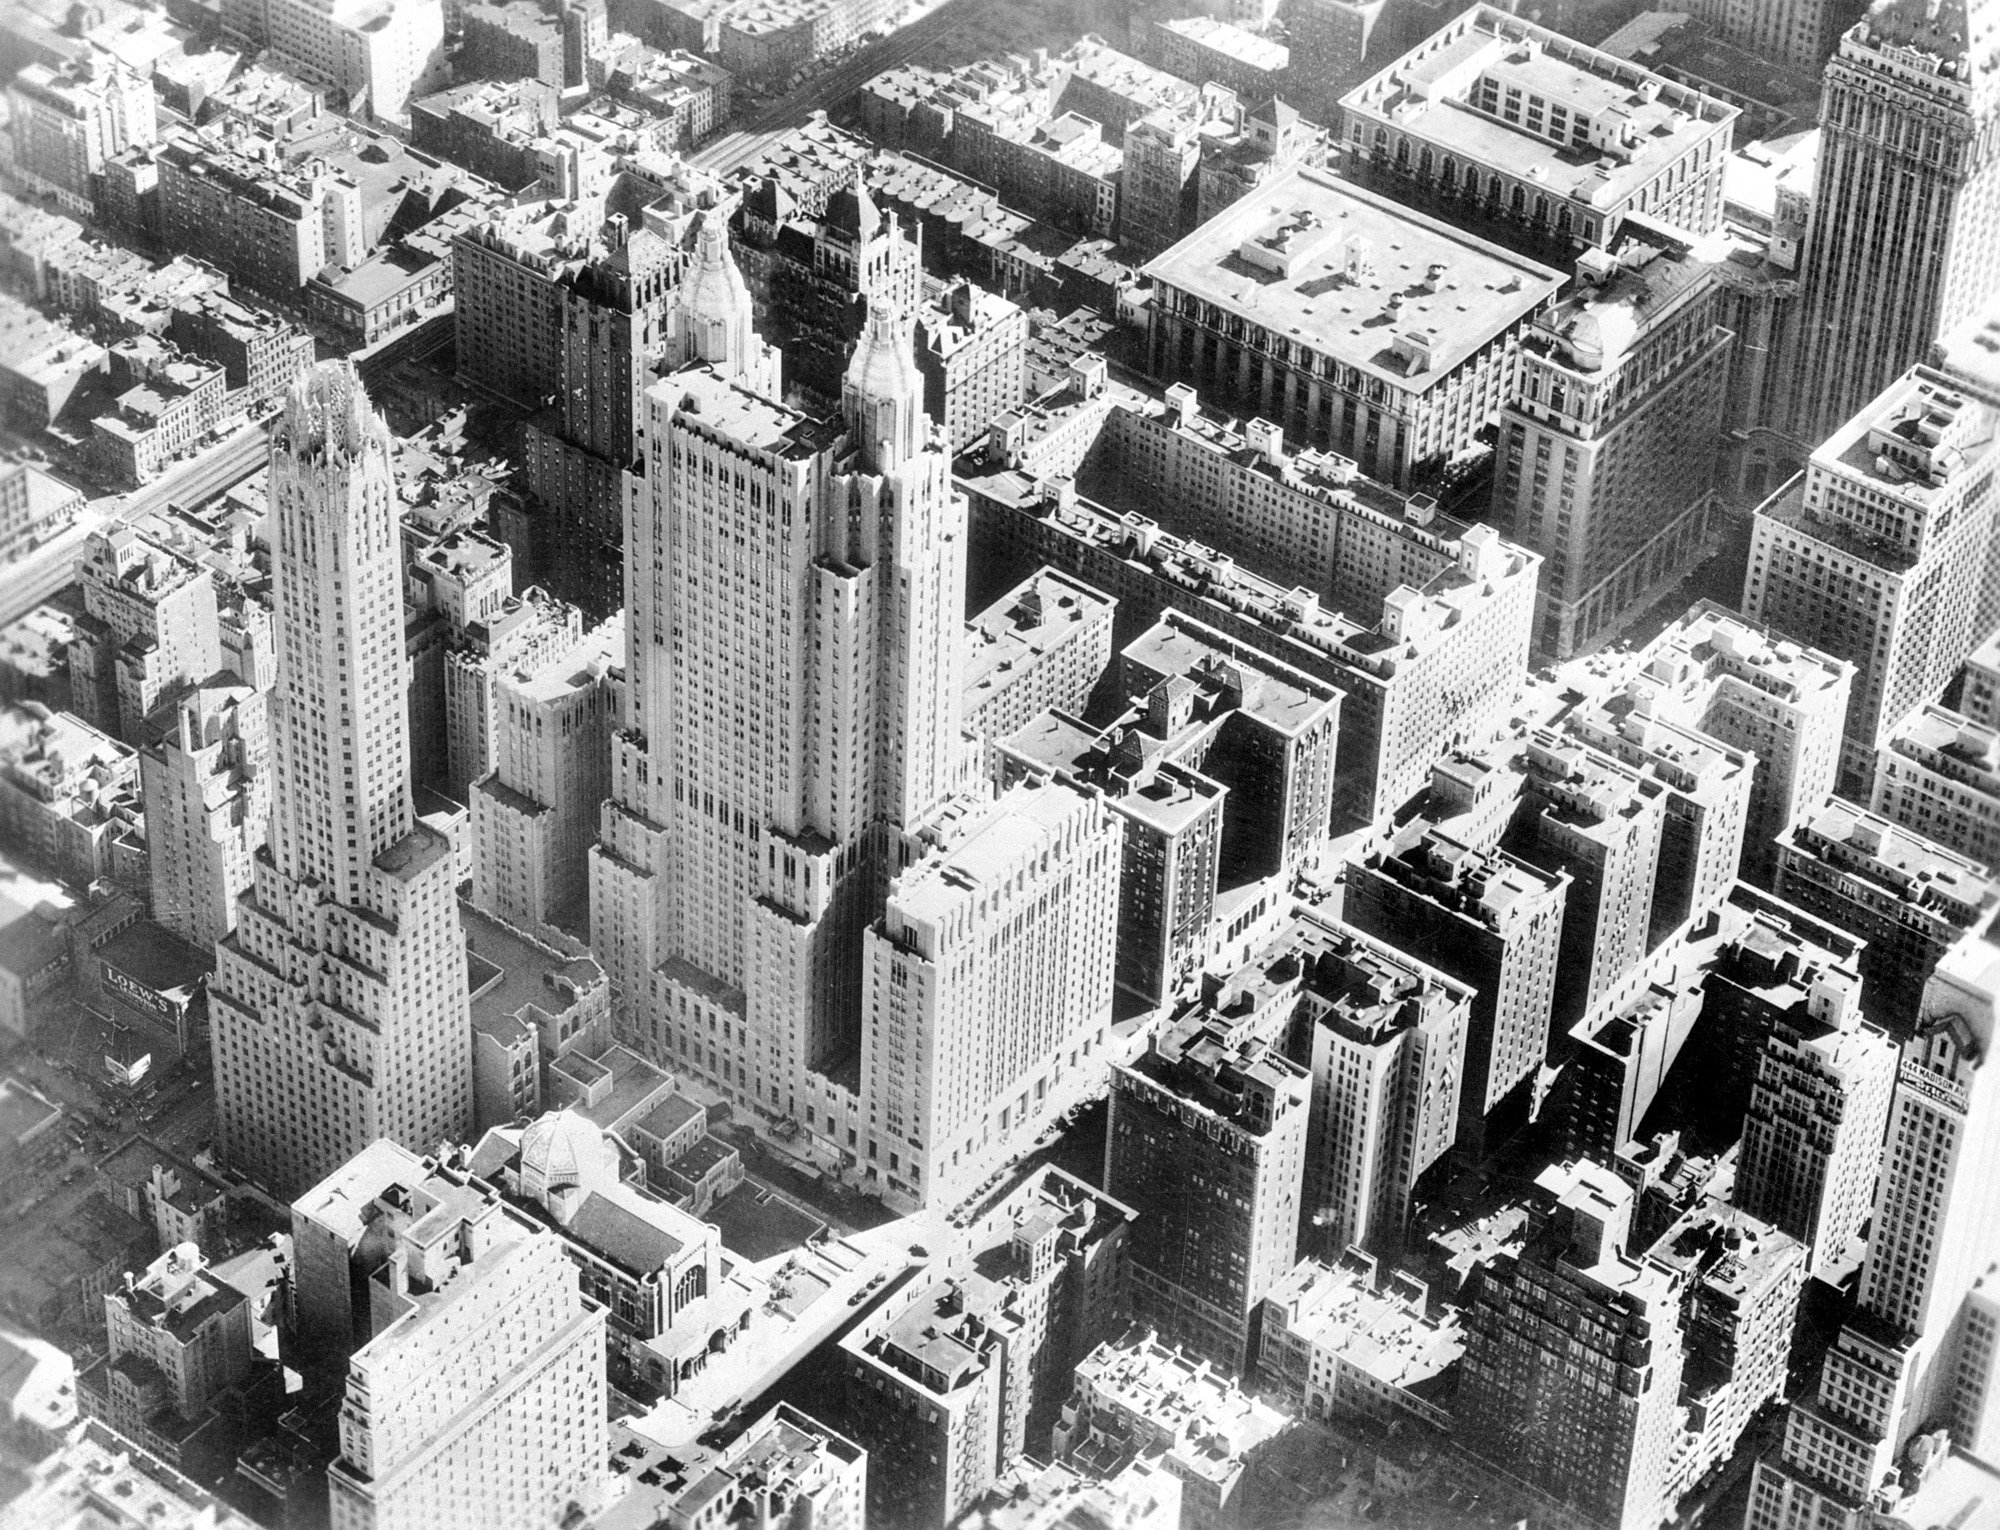 वाल्डोर्फ एस्टोरिया की साइट, 50वीं से 51वीं स्ट्रीट तक और पार्क से लेकर लेक्सिंगटन एवेन्यू तक एक पूर्ण सिटी ब्लॉक का विस्तार - 1931